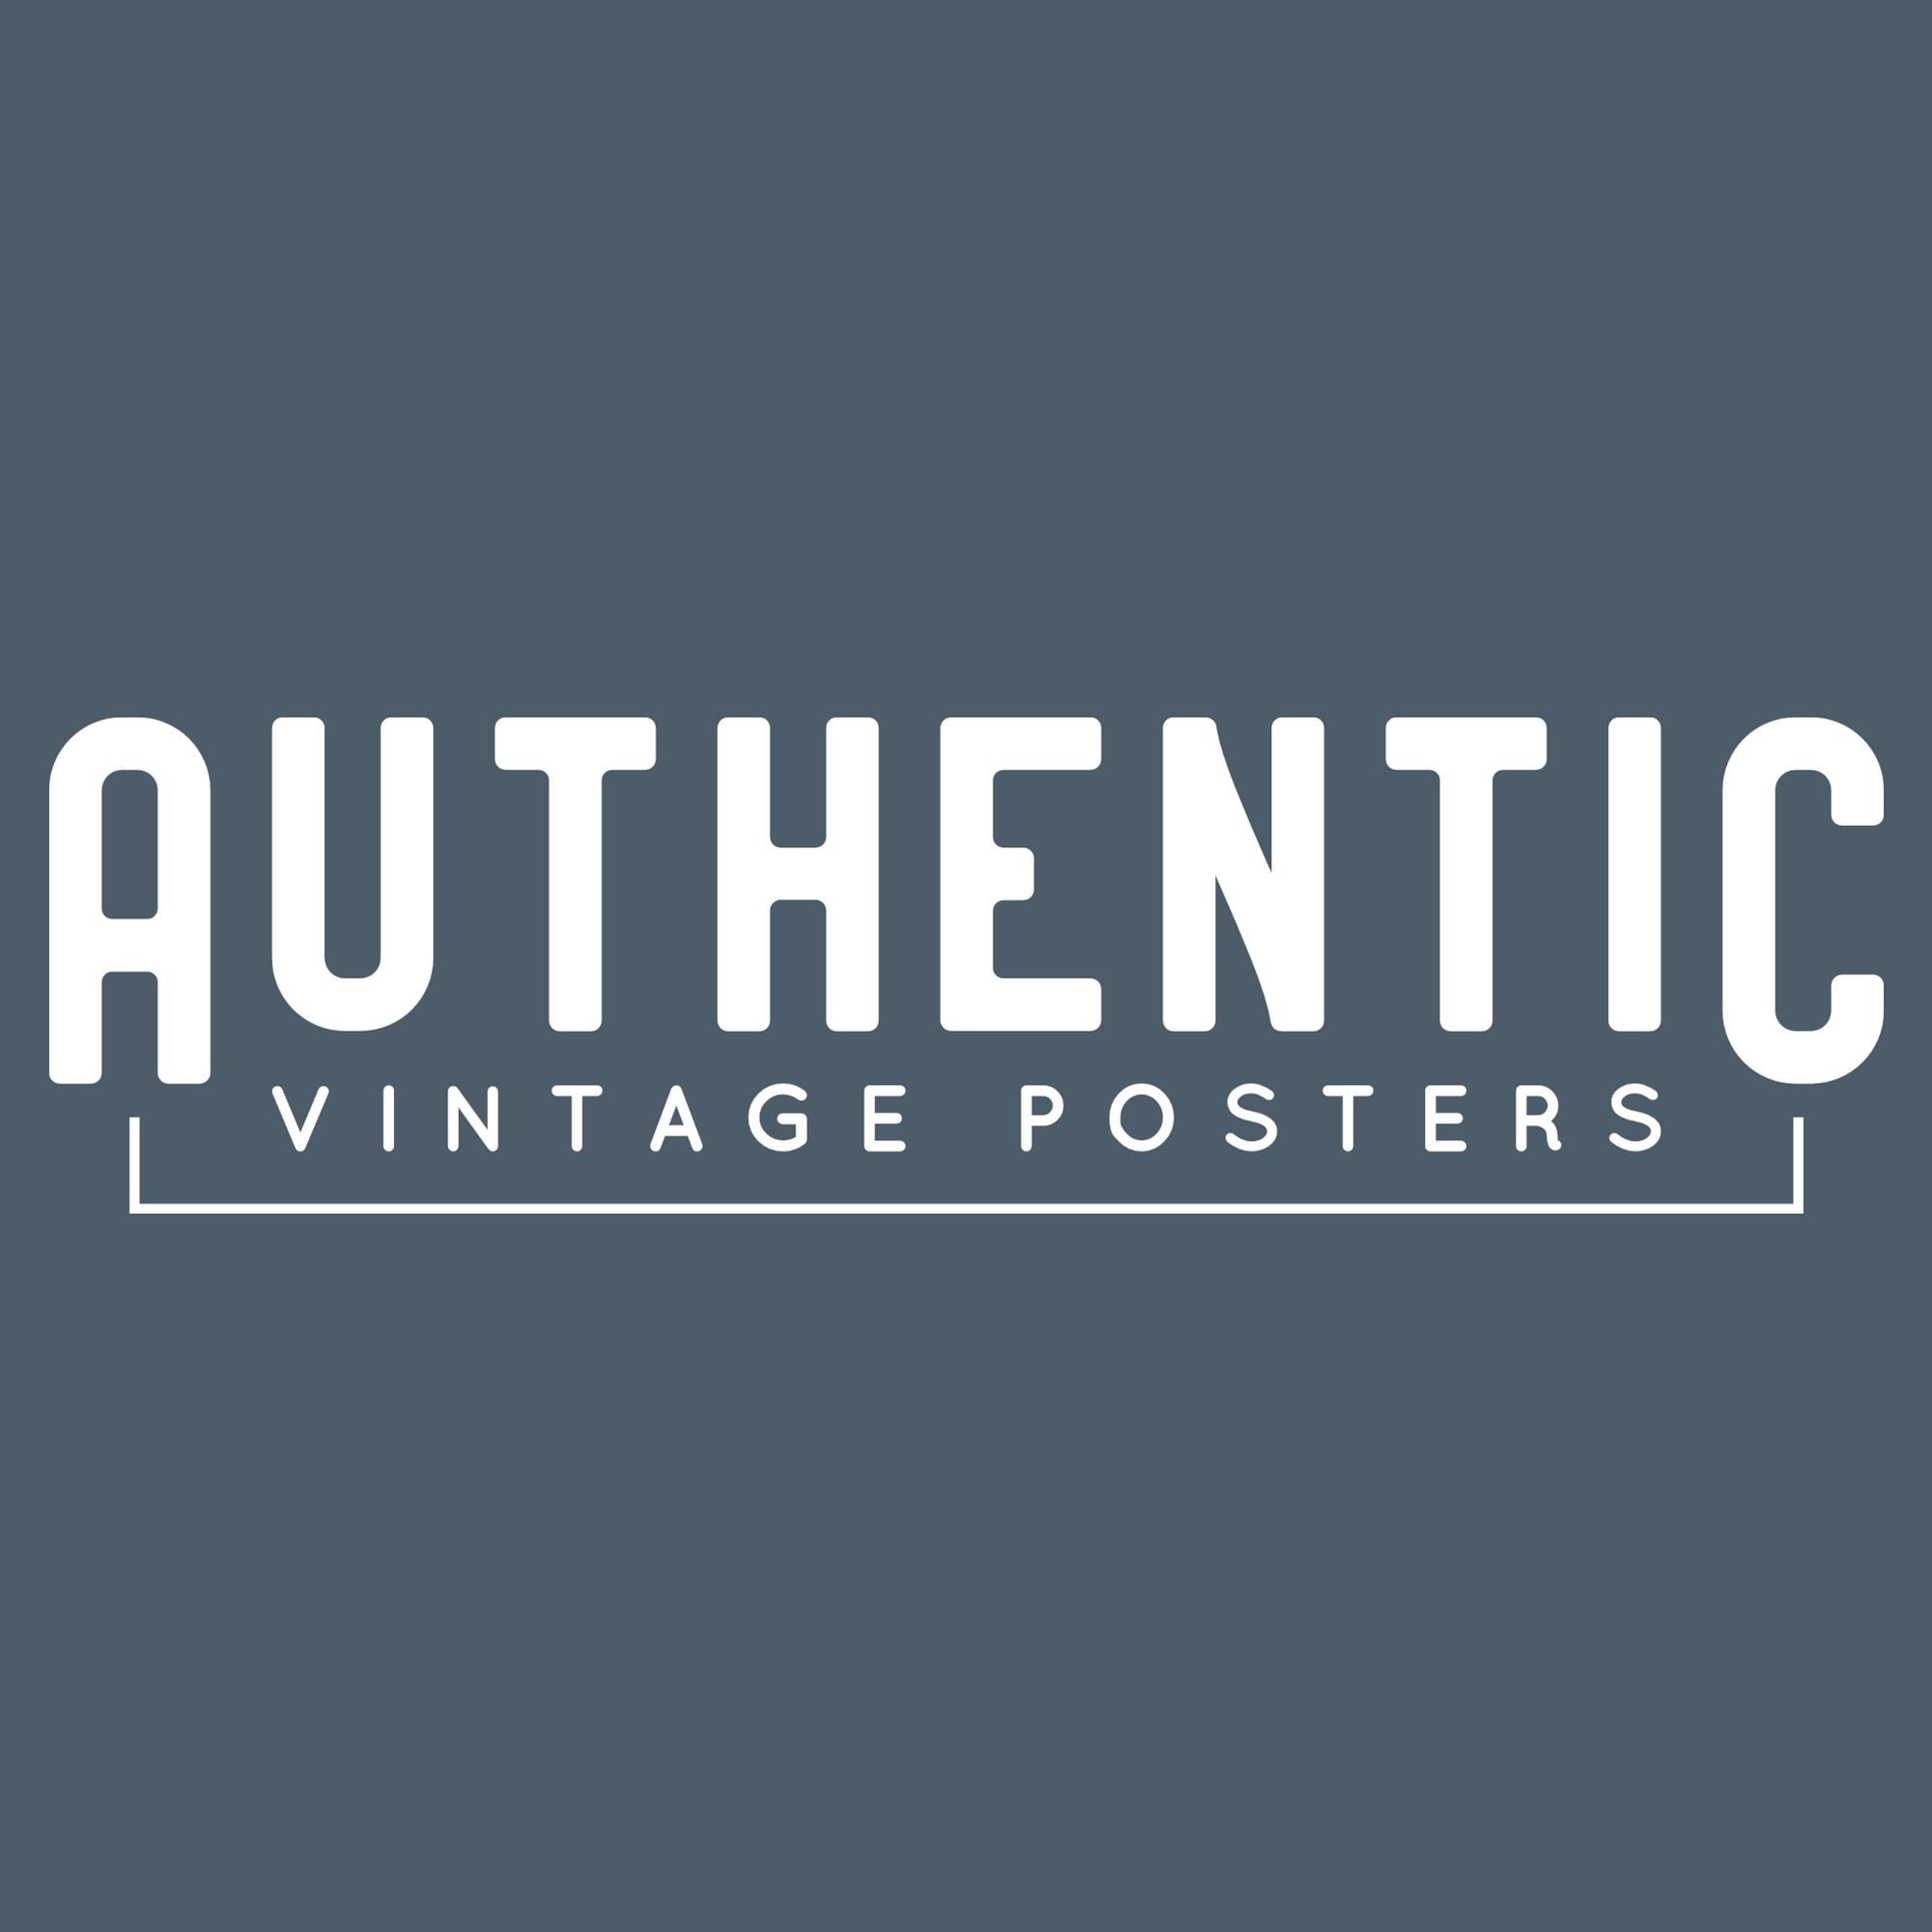 Authentic Vintage Posters - La Jolla Shopify Store